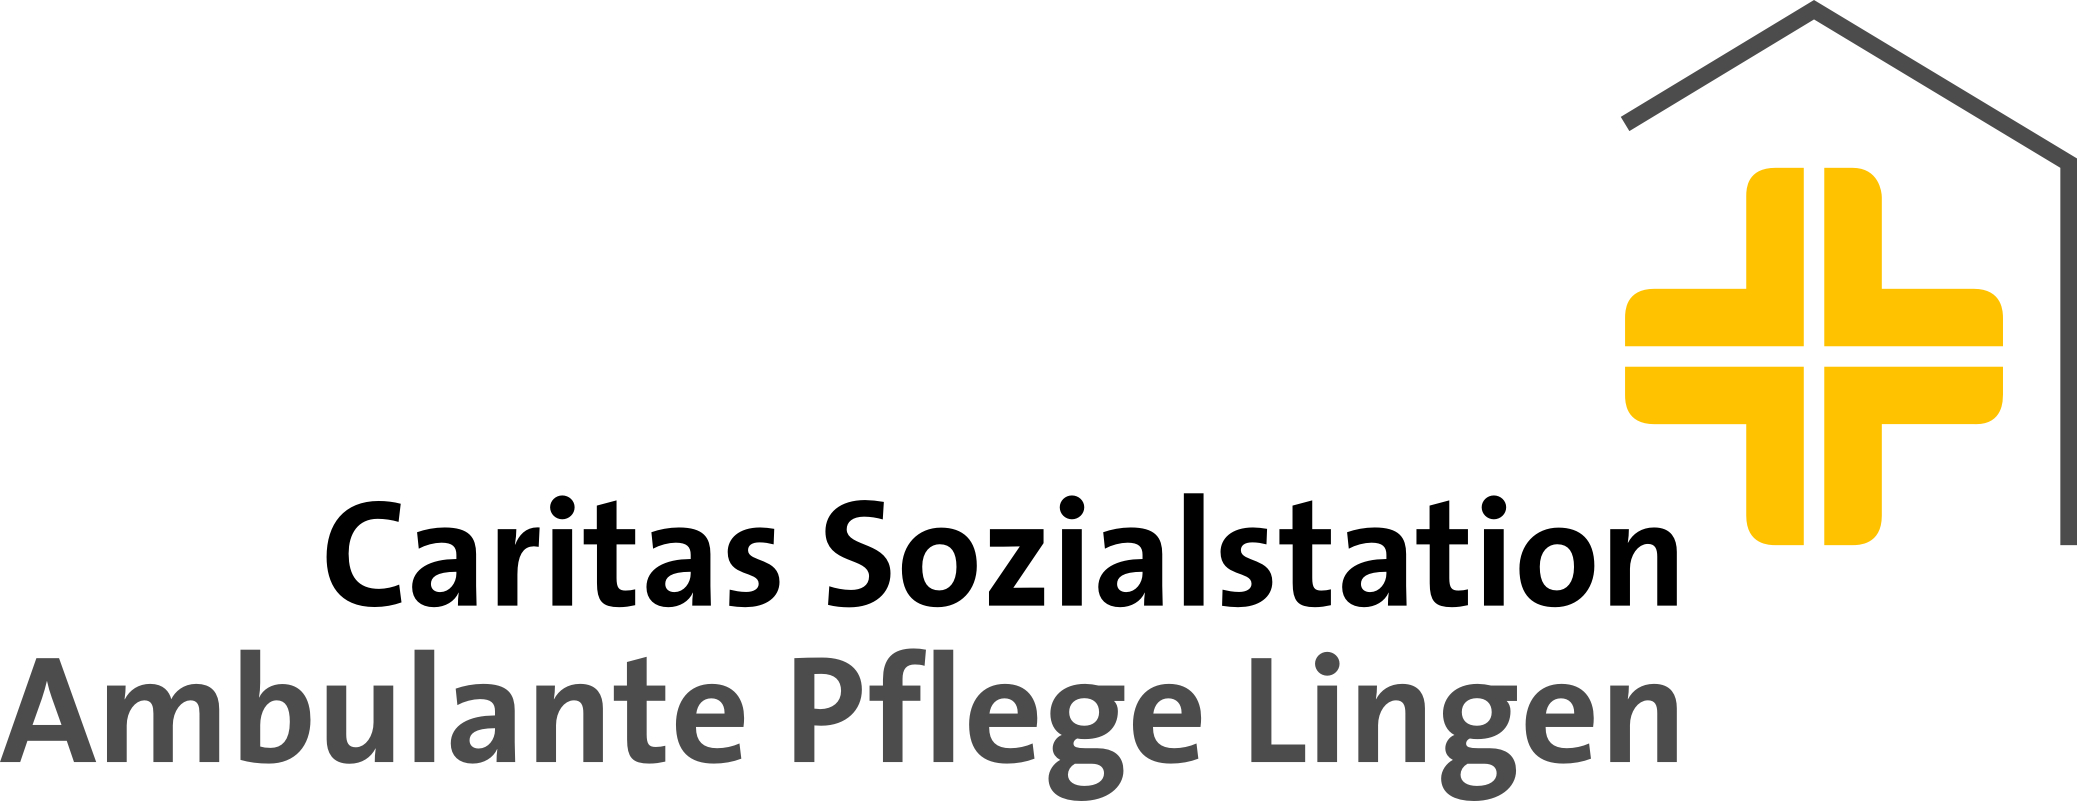 Caritas Sozialstation Ambulante Pflege Lingen